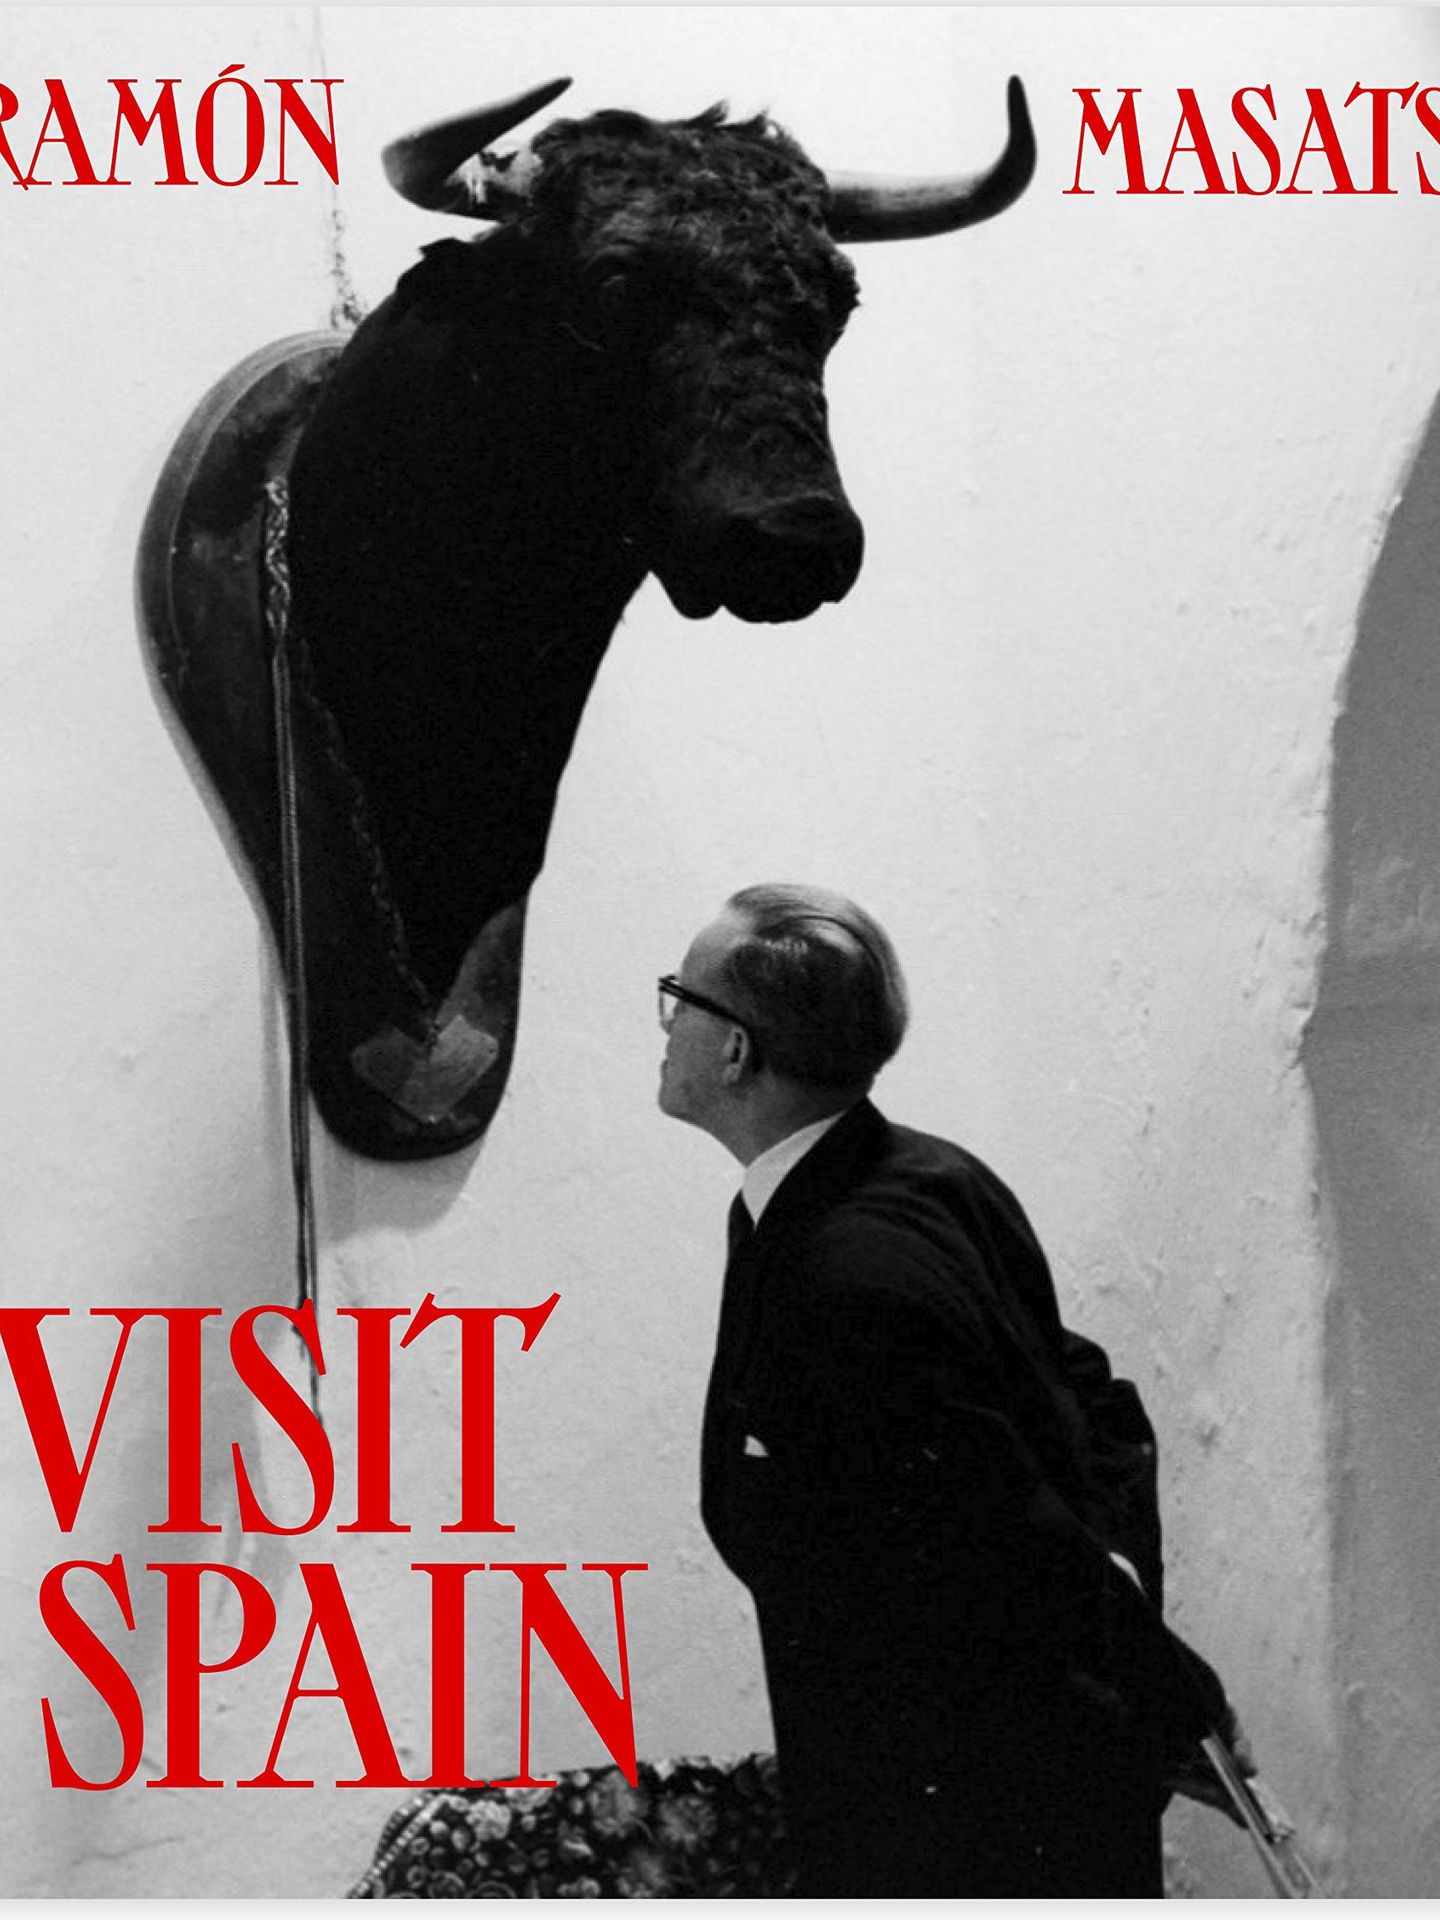 'Visit Spain'.